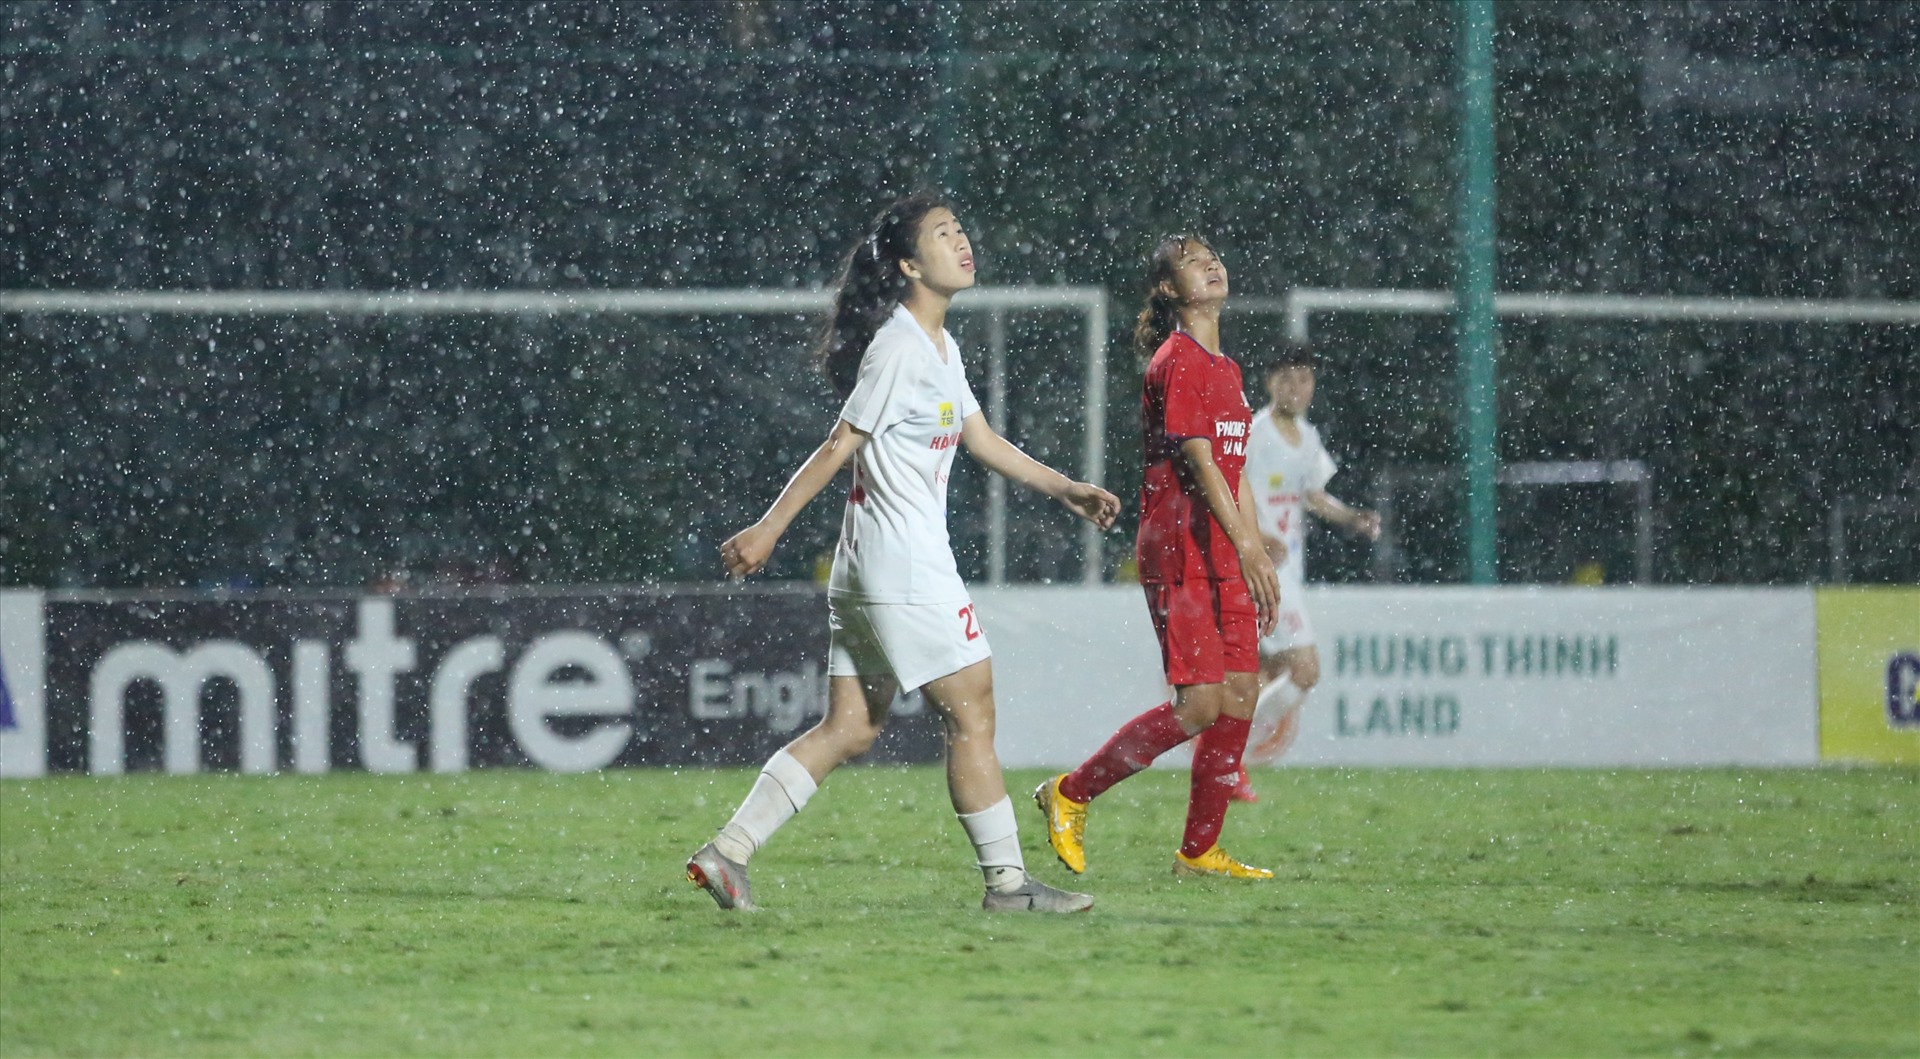 Tuy nhiên trời tiếp tục đổ mưa lớn khiến chất lượng chuyên môn trận đấu giảm xuống.